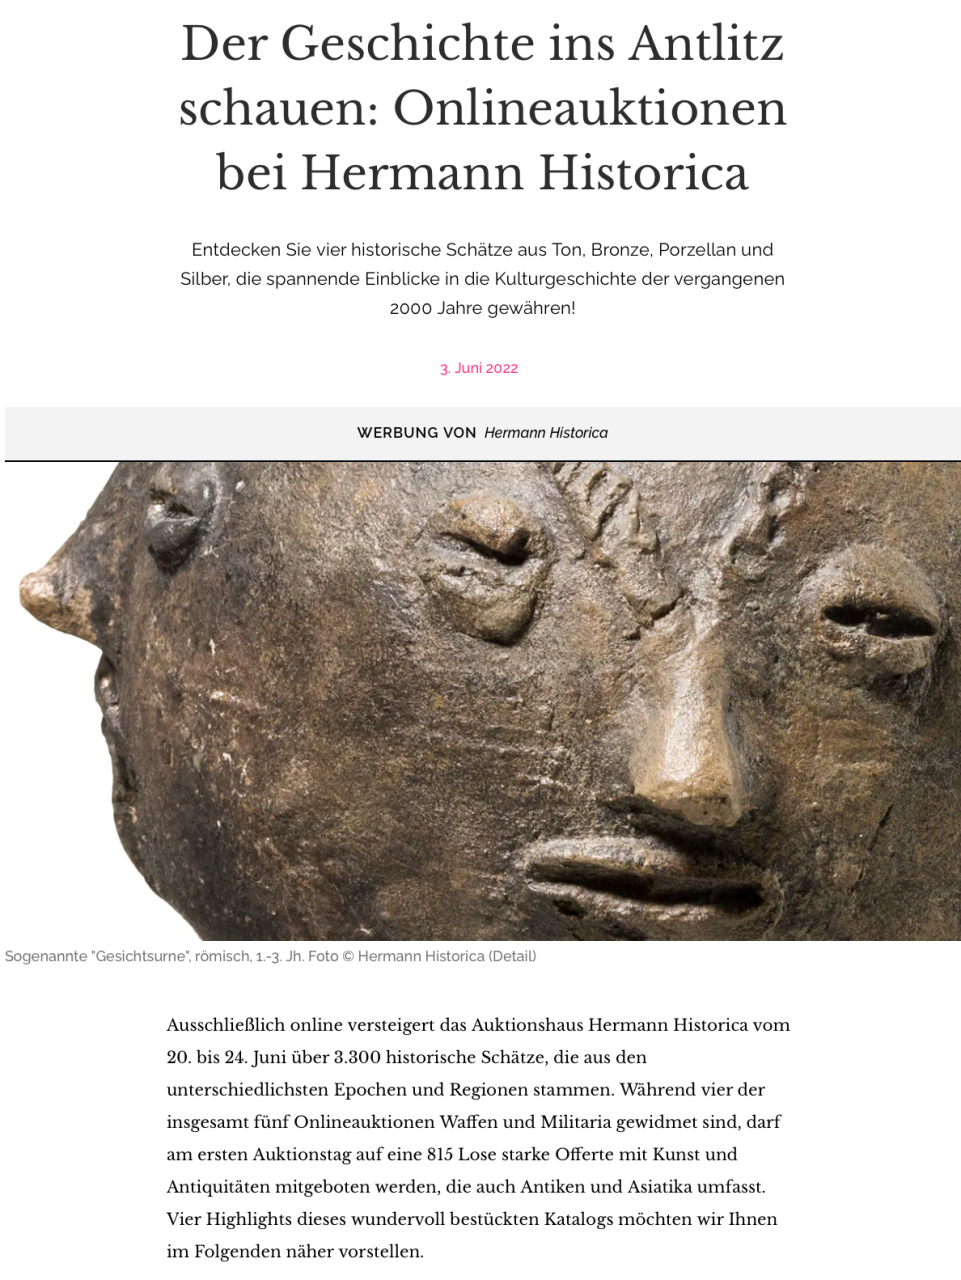 "Der Geschichte ins Antlitz schauen: Onlineauktionen bei Hermann Historica"